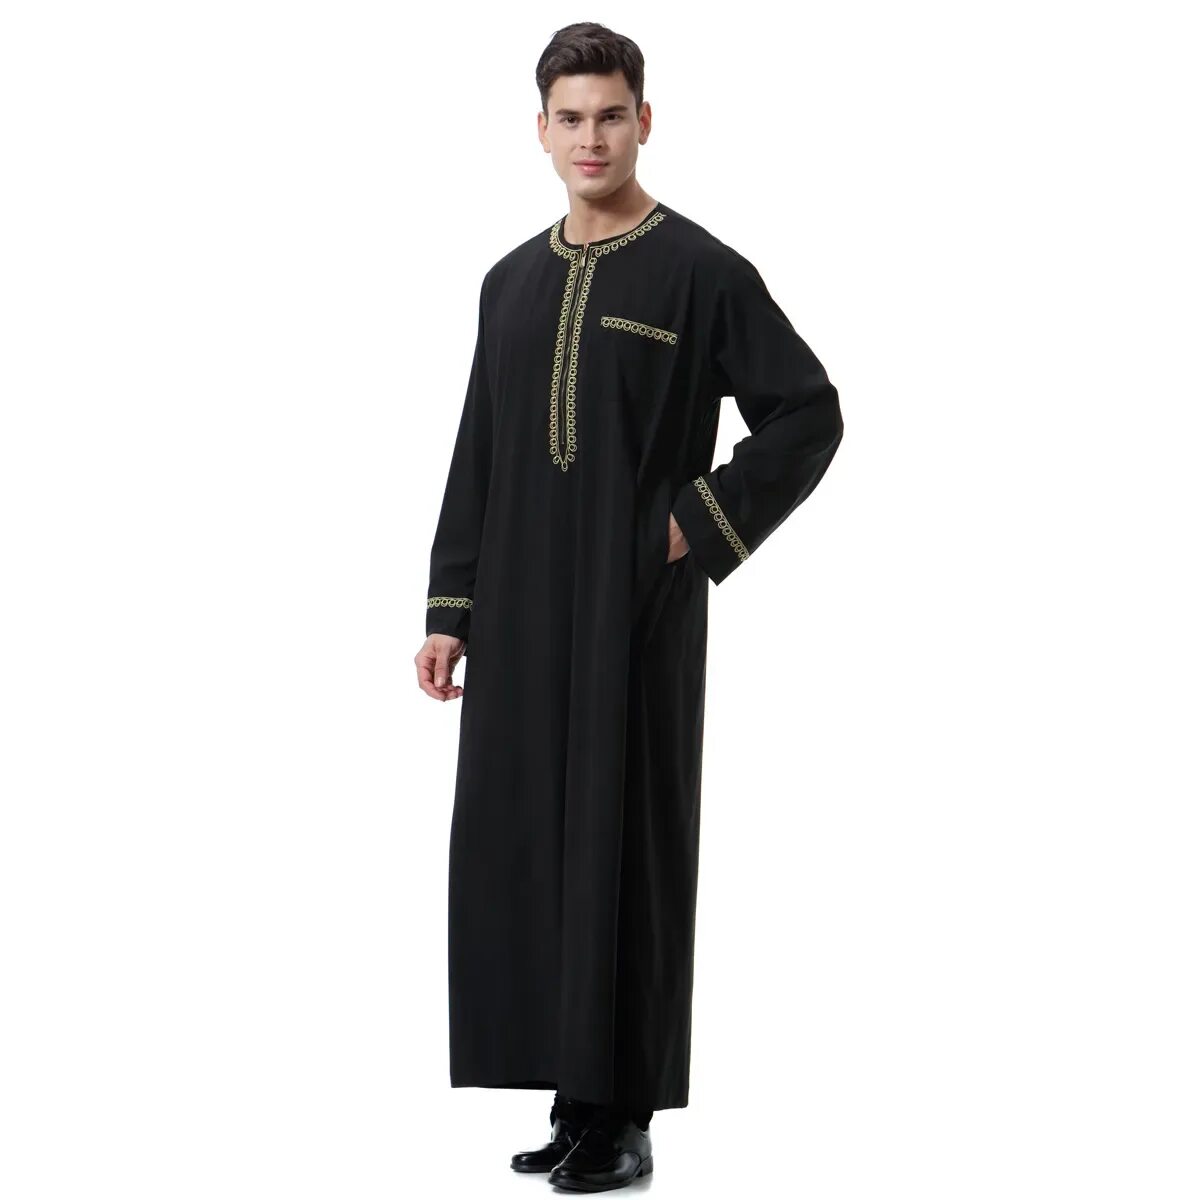 Мусульманская для мужчин купить. Мусульманская абайя мужская. Мусульманская мужская одежда абайя. Платье мужское мусульманское. Арабское мужское платье.